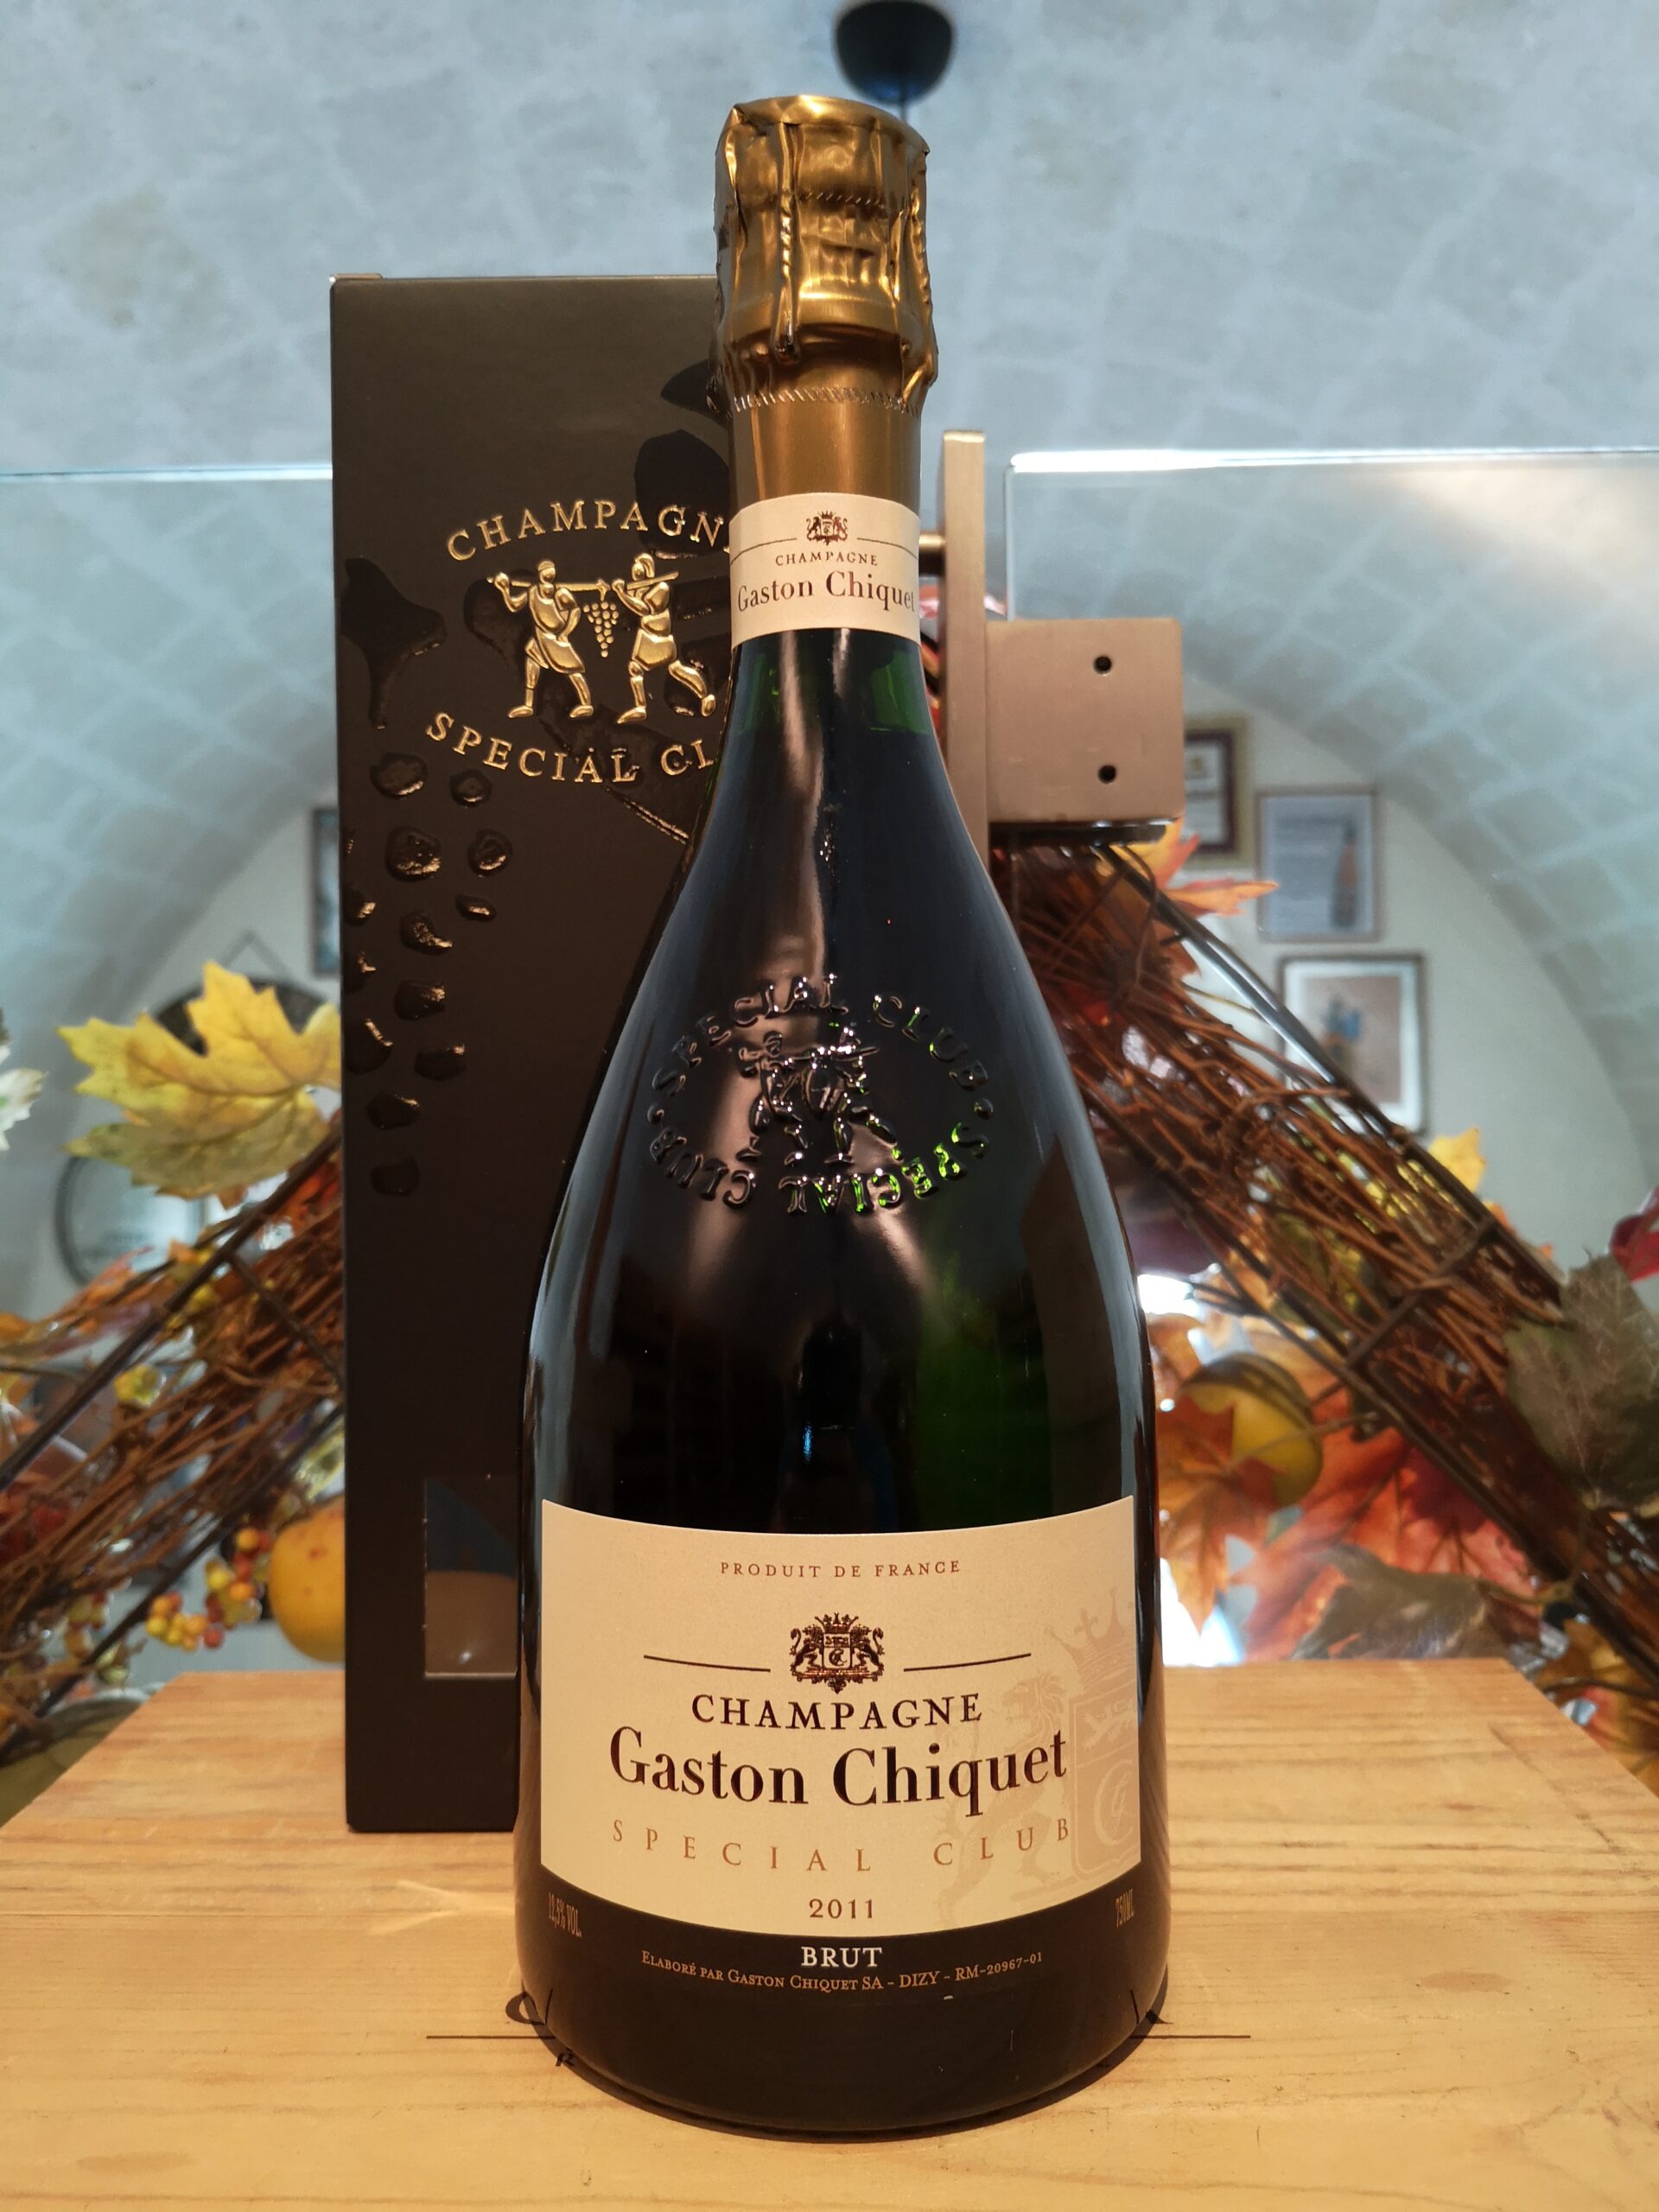 Gaston Chiquet Special Club Grand Cru Champagne Brut 2015